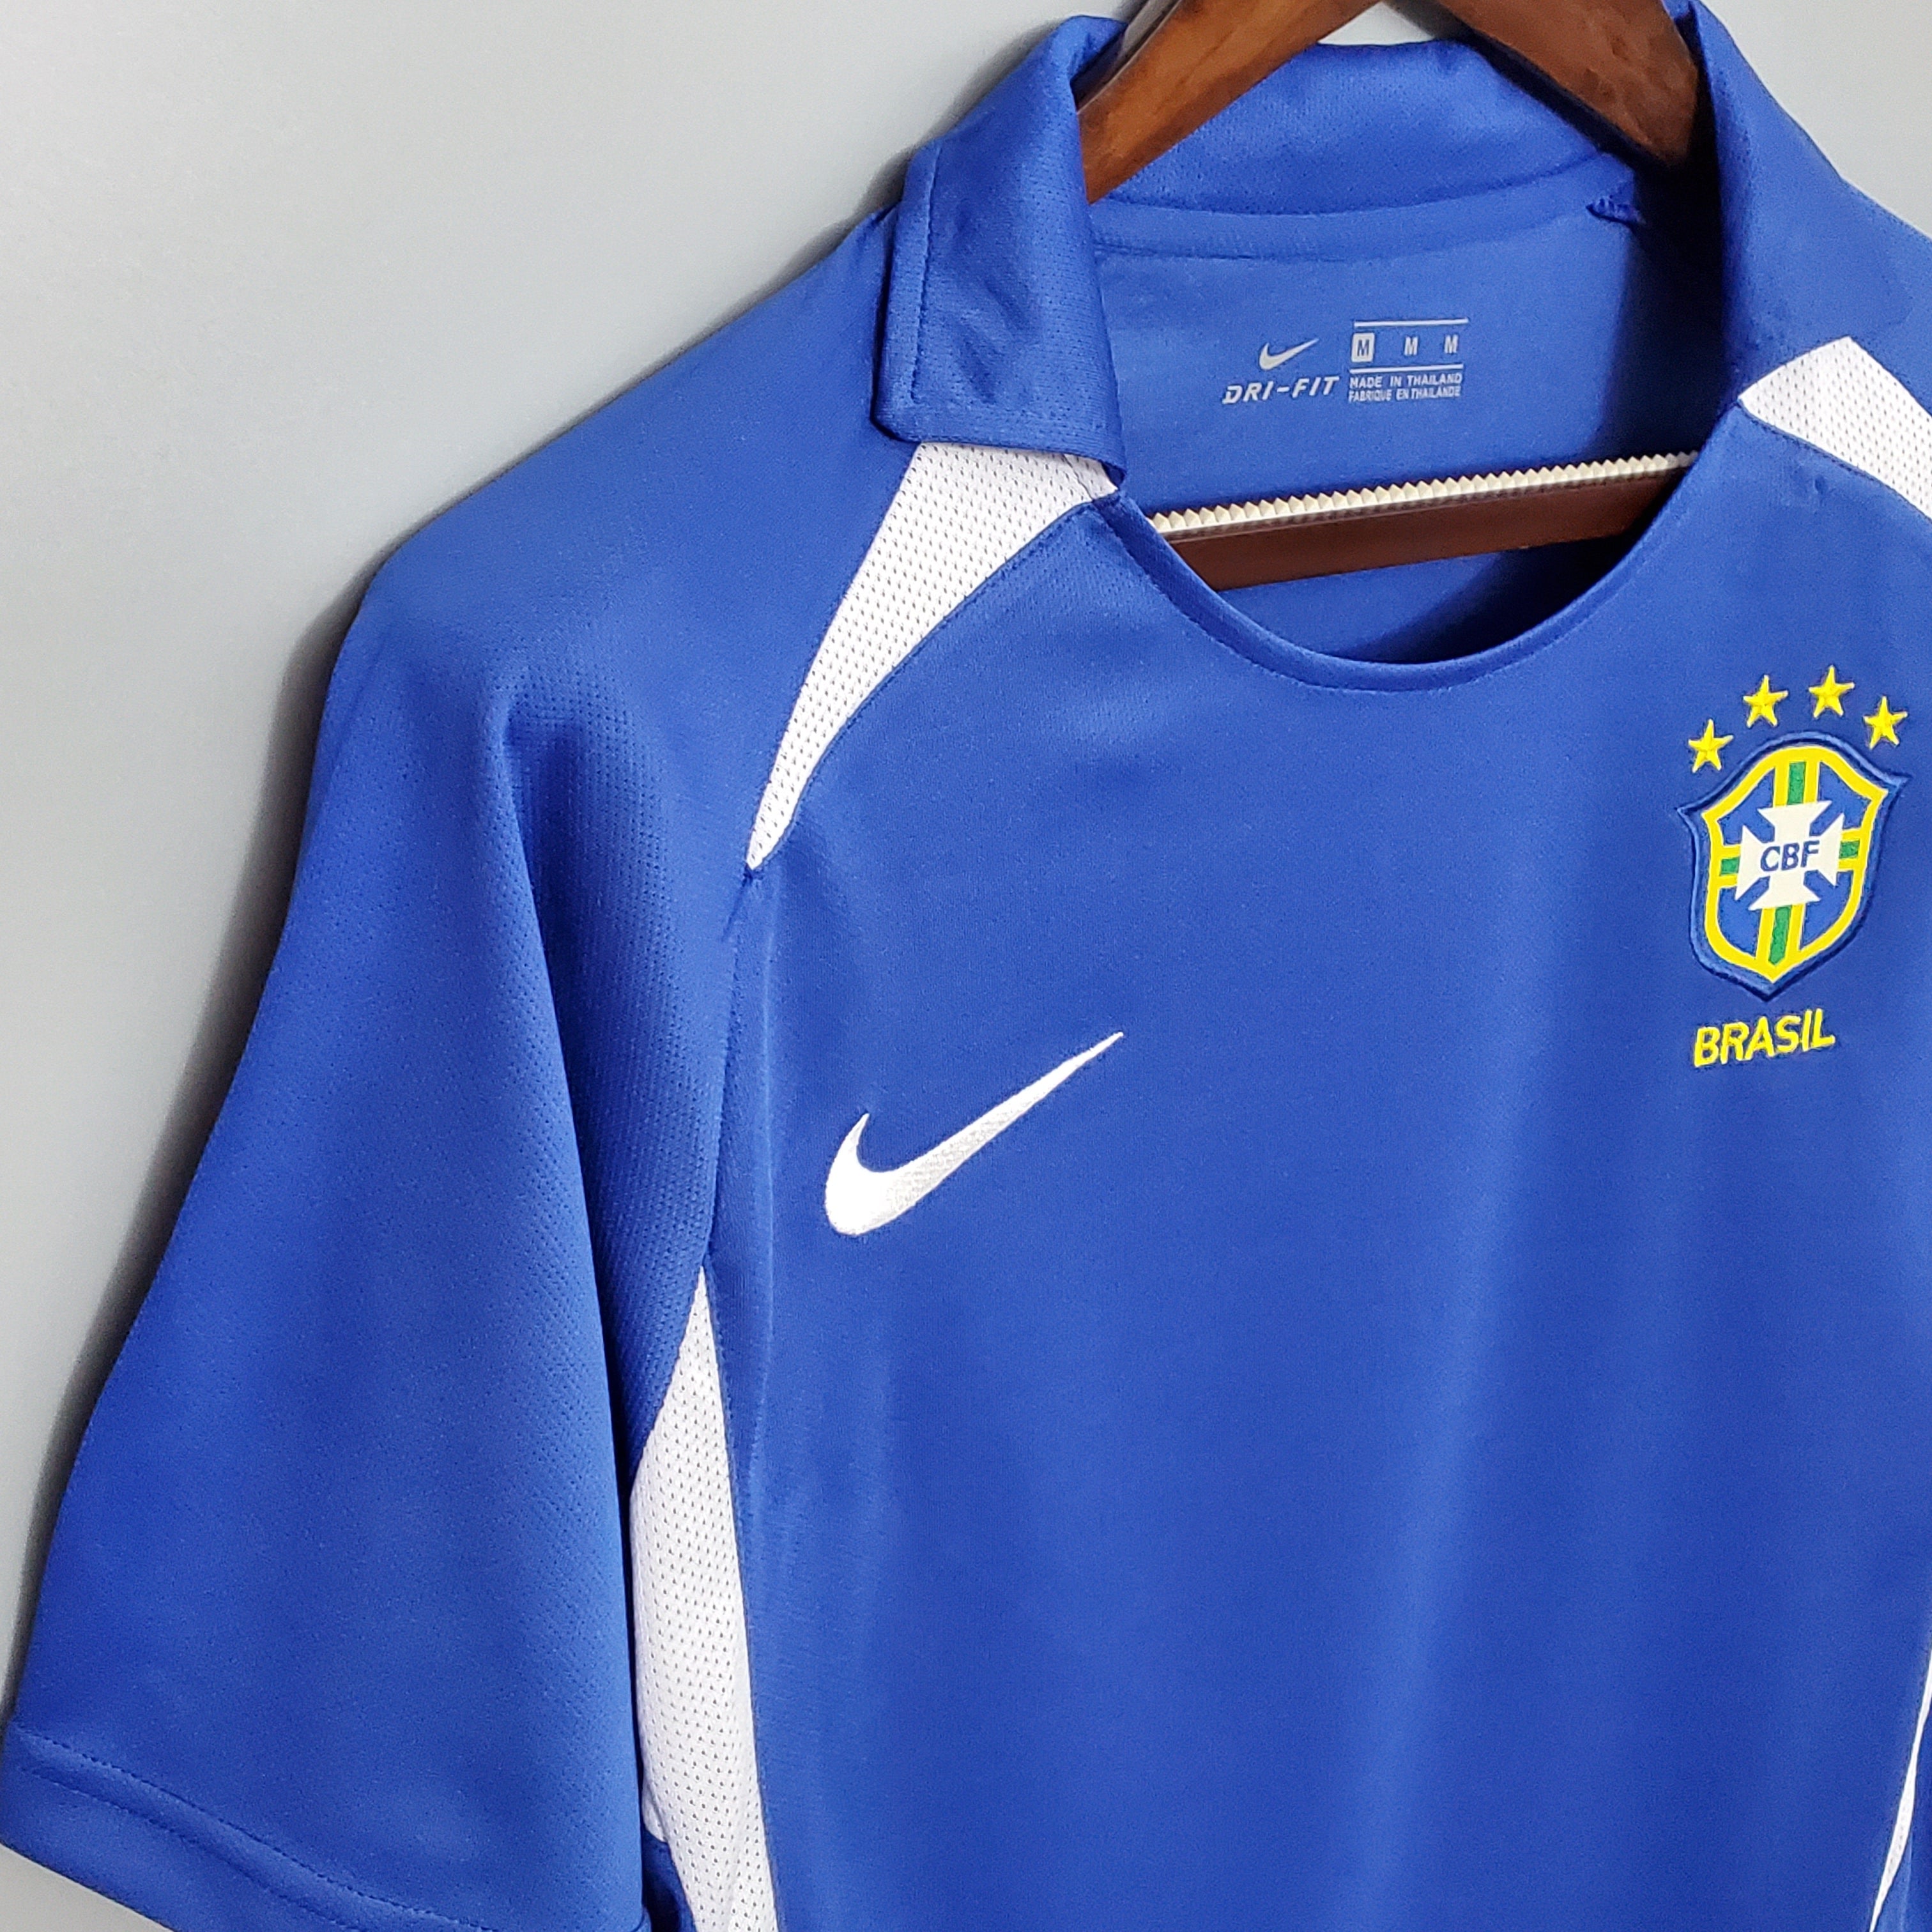 Brazil 2002 World Cup Away Jersey